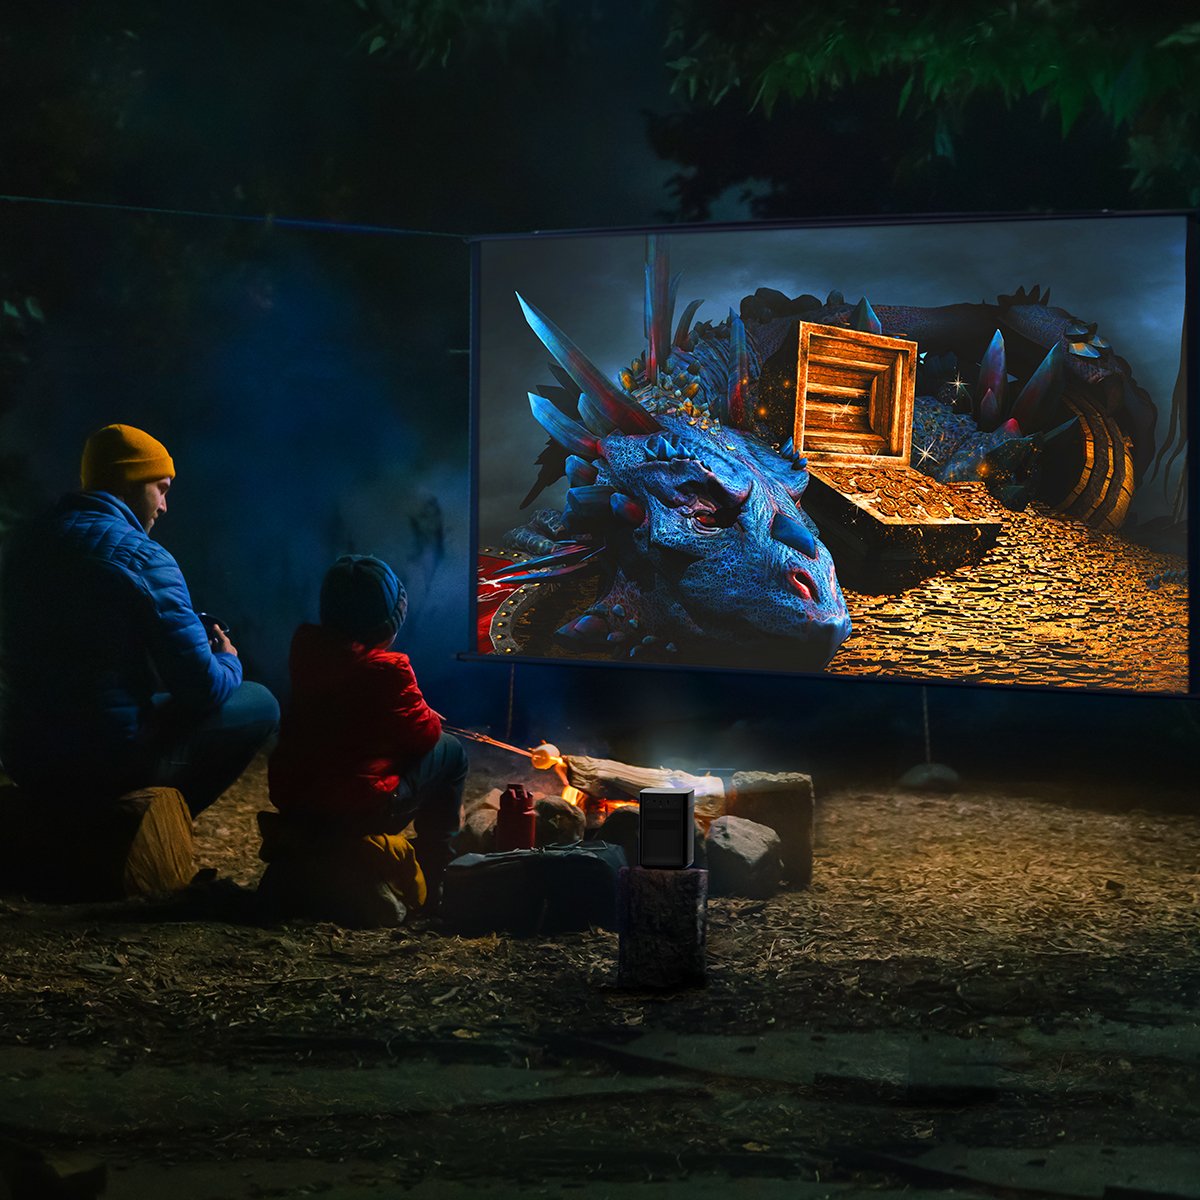 Profitez du divertissement en camping avec le projecteur portable Halo+ 1080p FHD